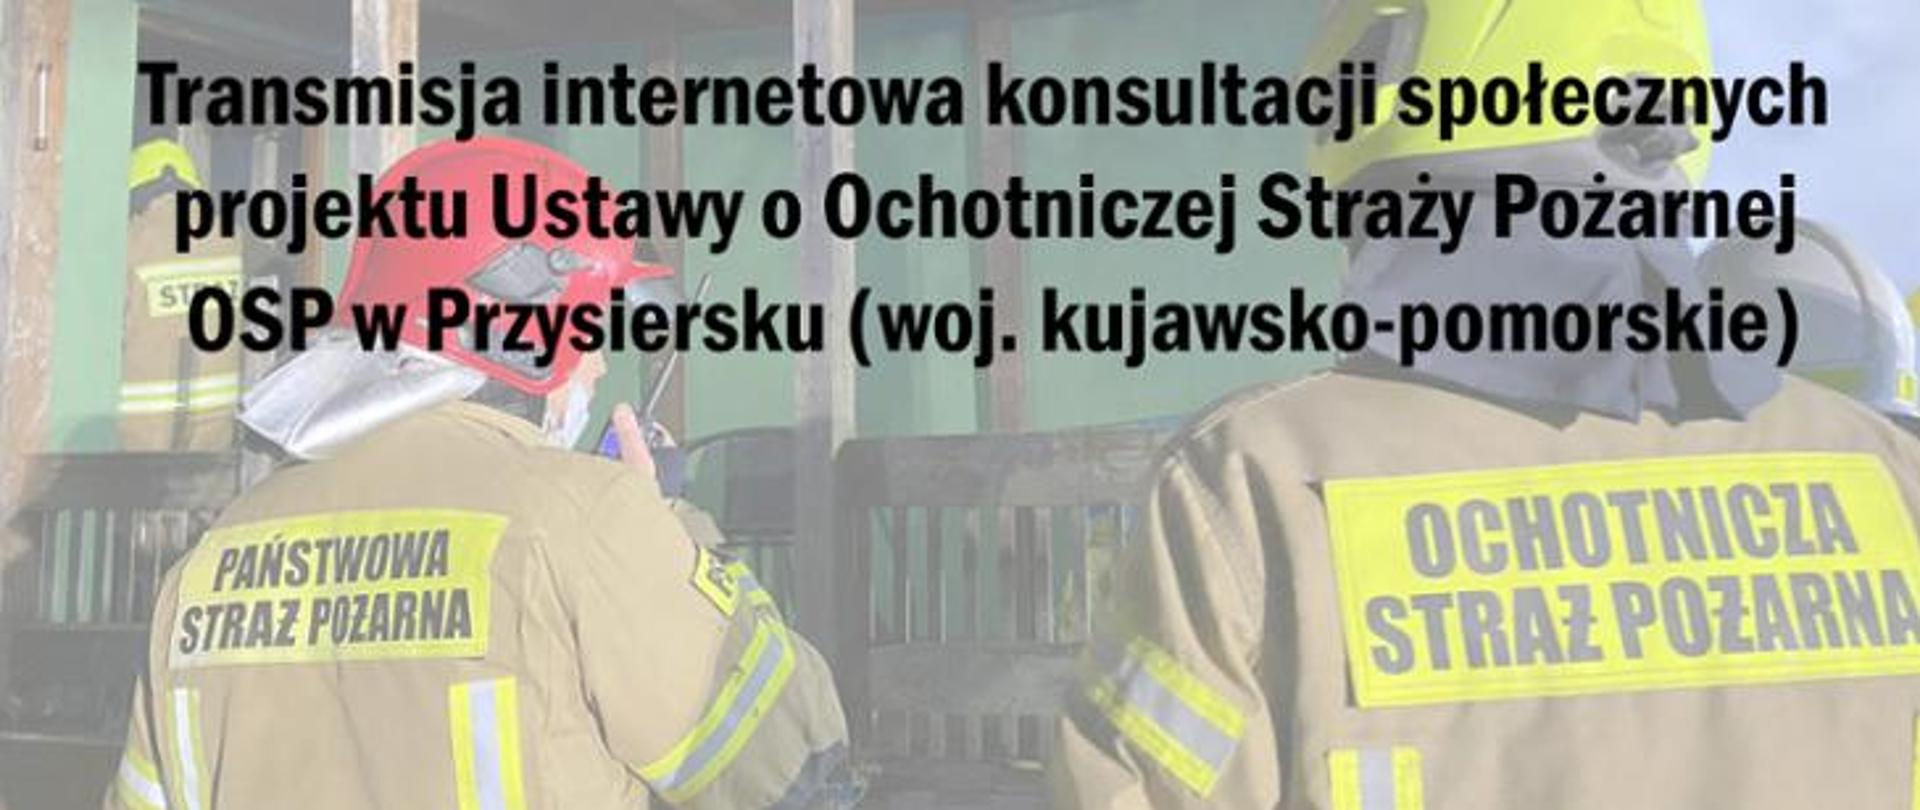 Transmisja internetowa konsultacji spolecznych
projektu Ustawy o Ochotniczej Strazy Pozarnej
OSP w Przysiersku (woj. kujawsko-pomorskie)